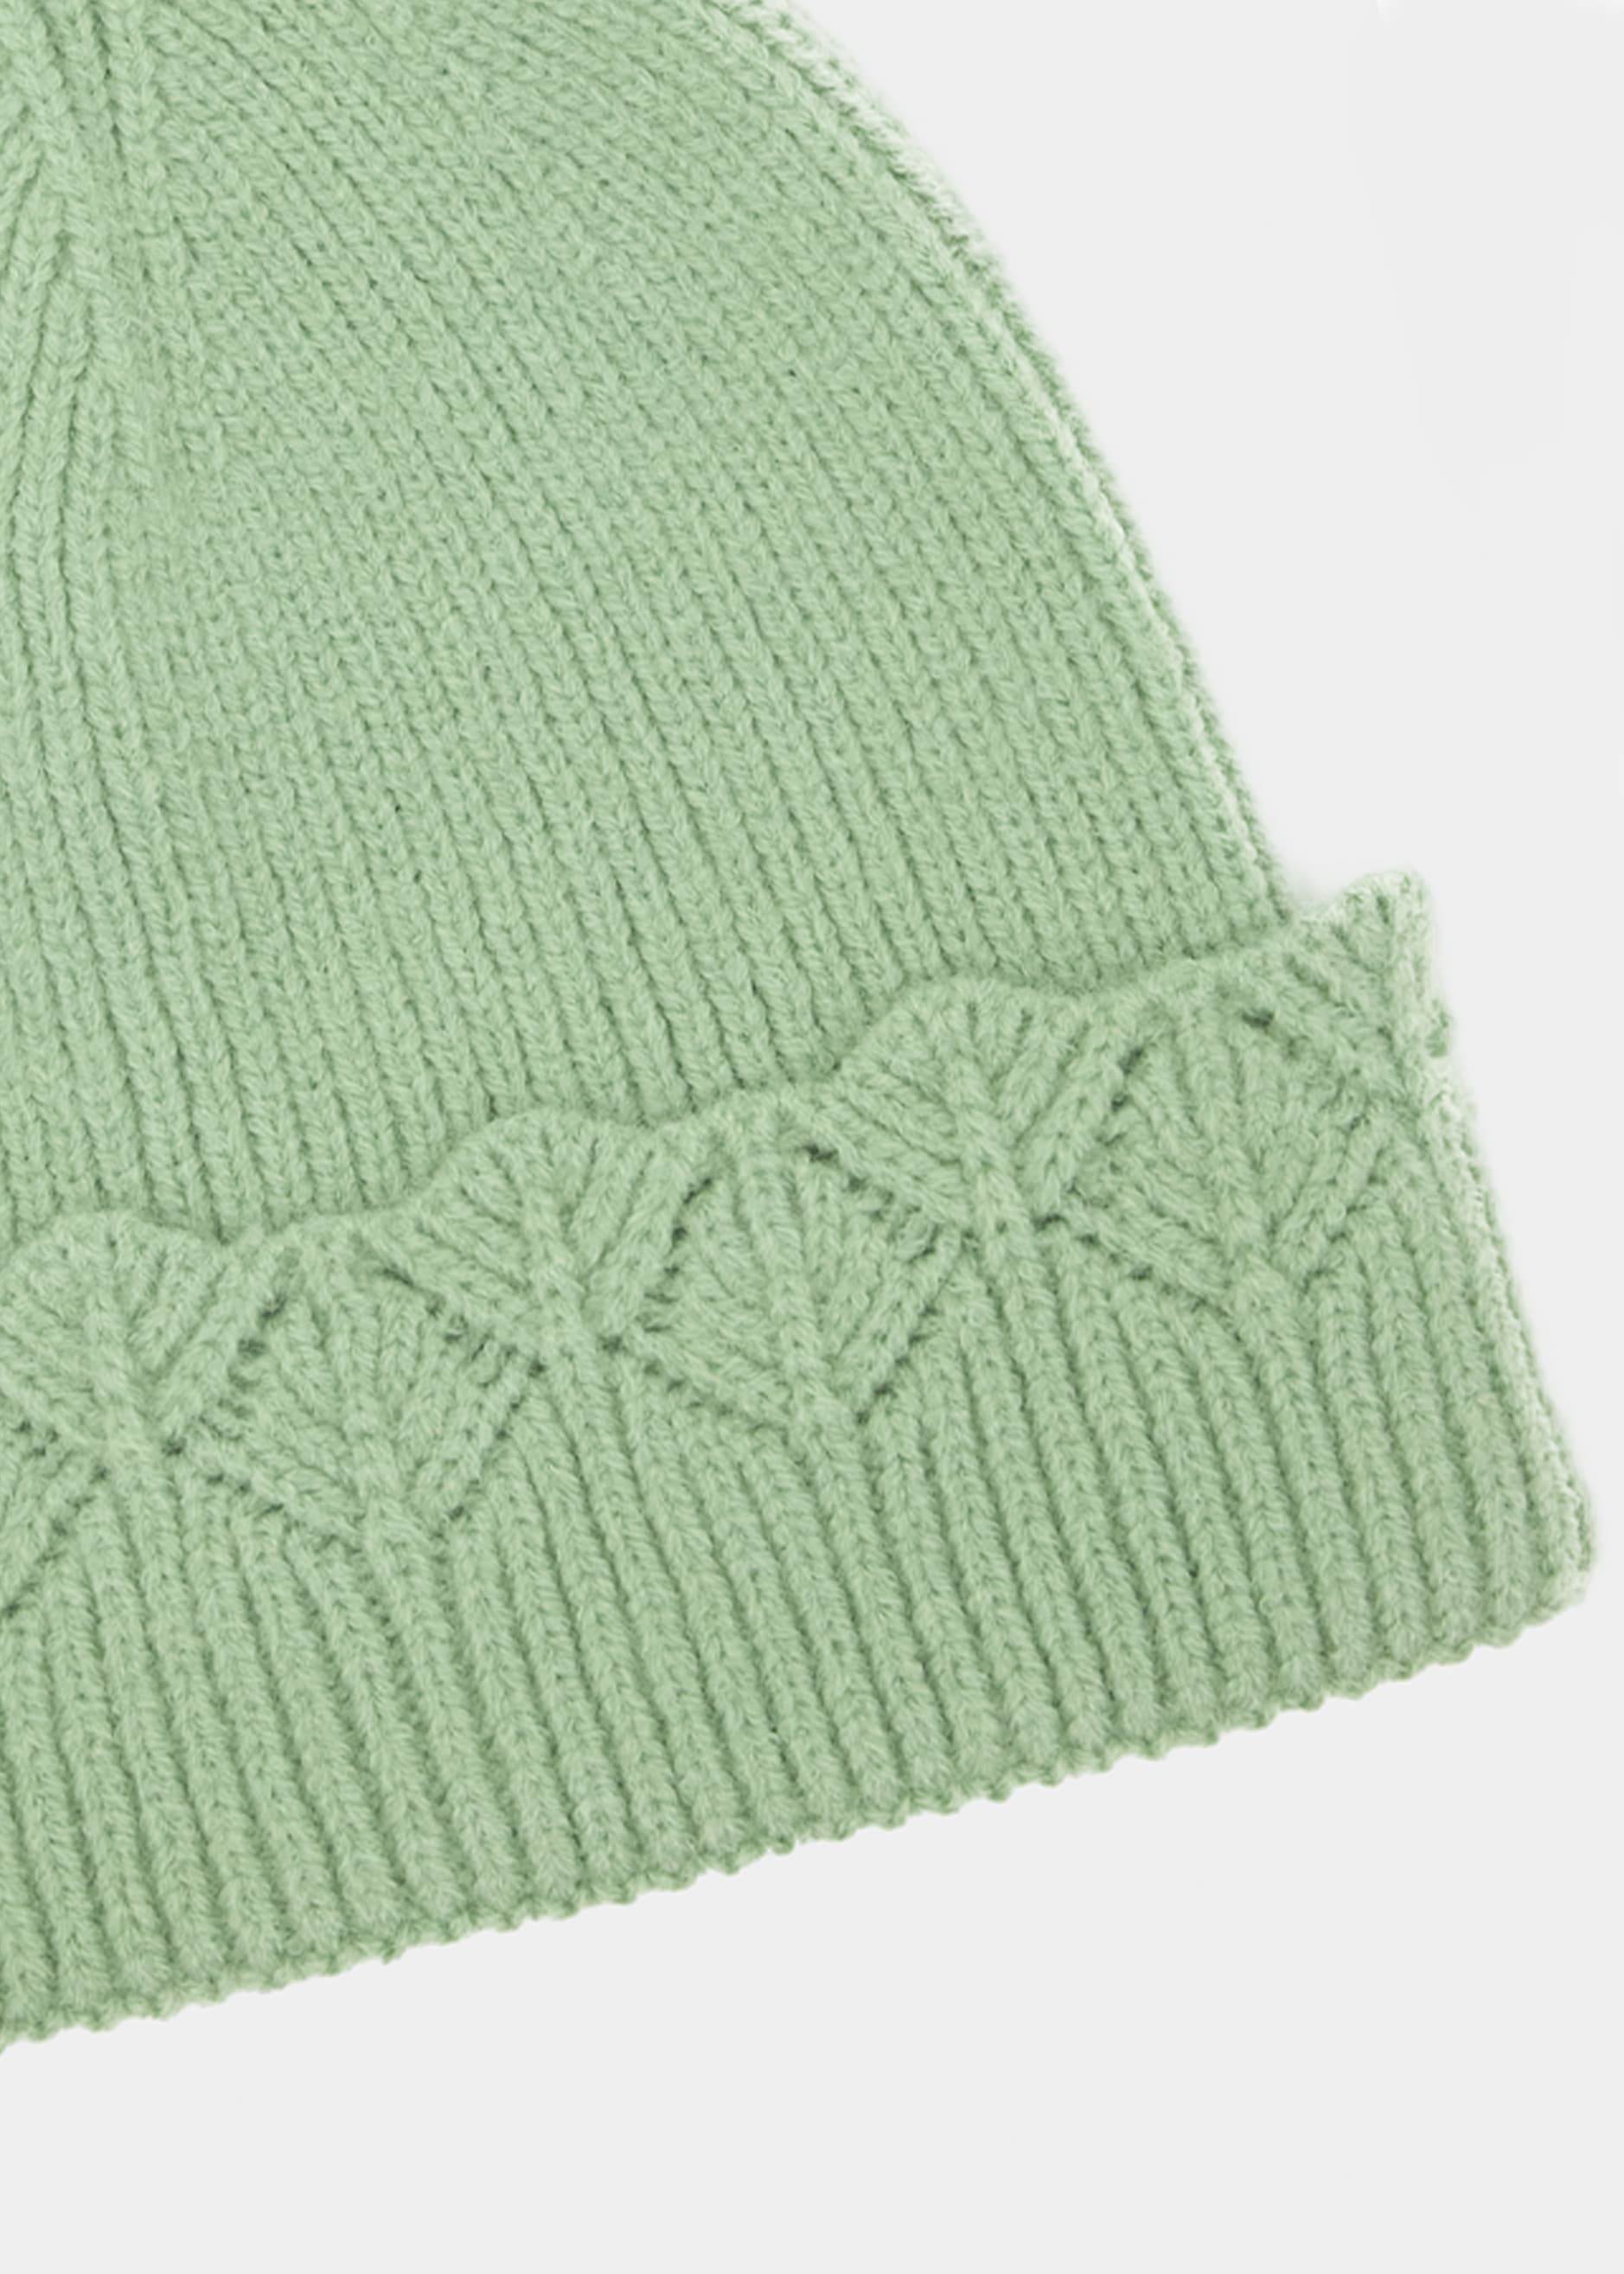 Mütze mit Ajour Strick Blende - grün | Mützen & Stirnbänder | Accessoires |  SALE % | SASSYCLASSY